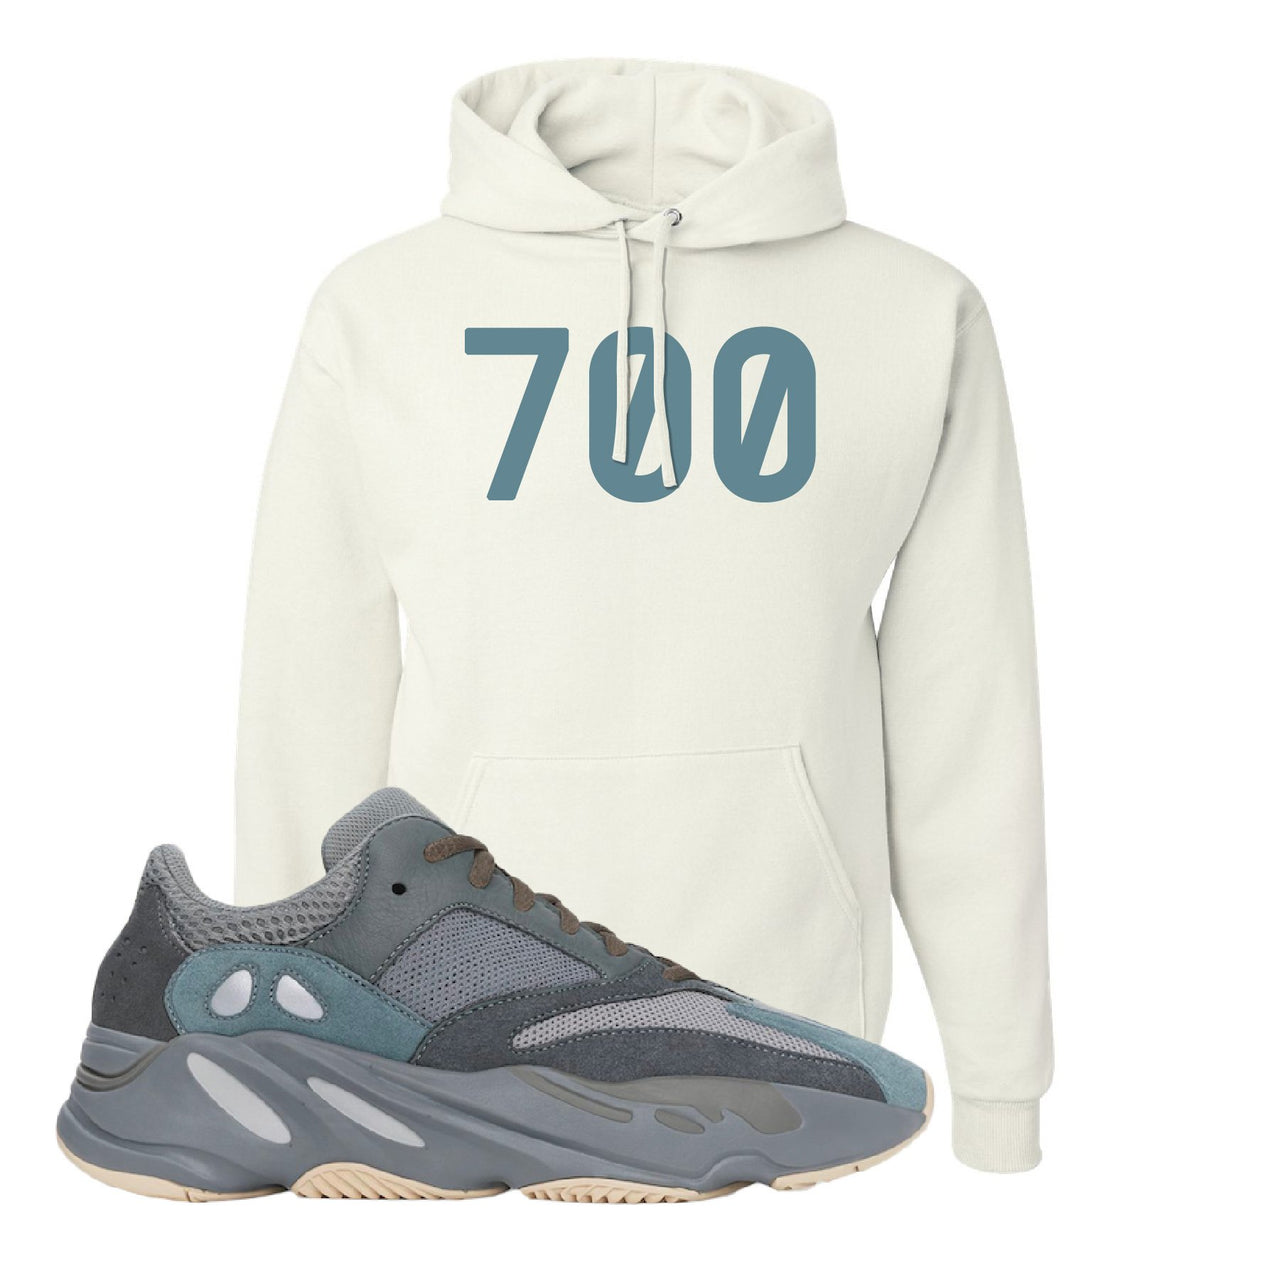 Yeezy Boost 700 Teal Blue 700 White Sneaker Hook Up Pullover Hoodie